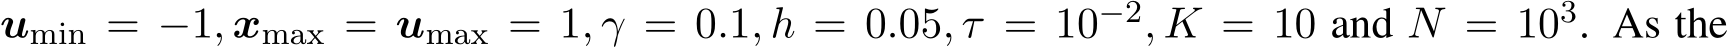 umin = −1, xmax = umax = 1, γ = 0.1, h = 0.05, τ = 10−2, K = 10 and N = 103. As the